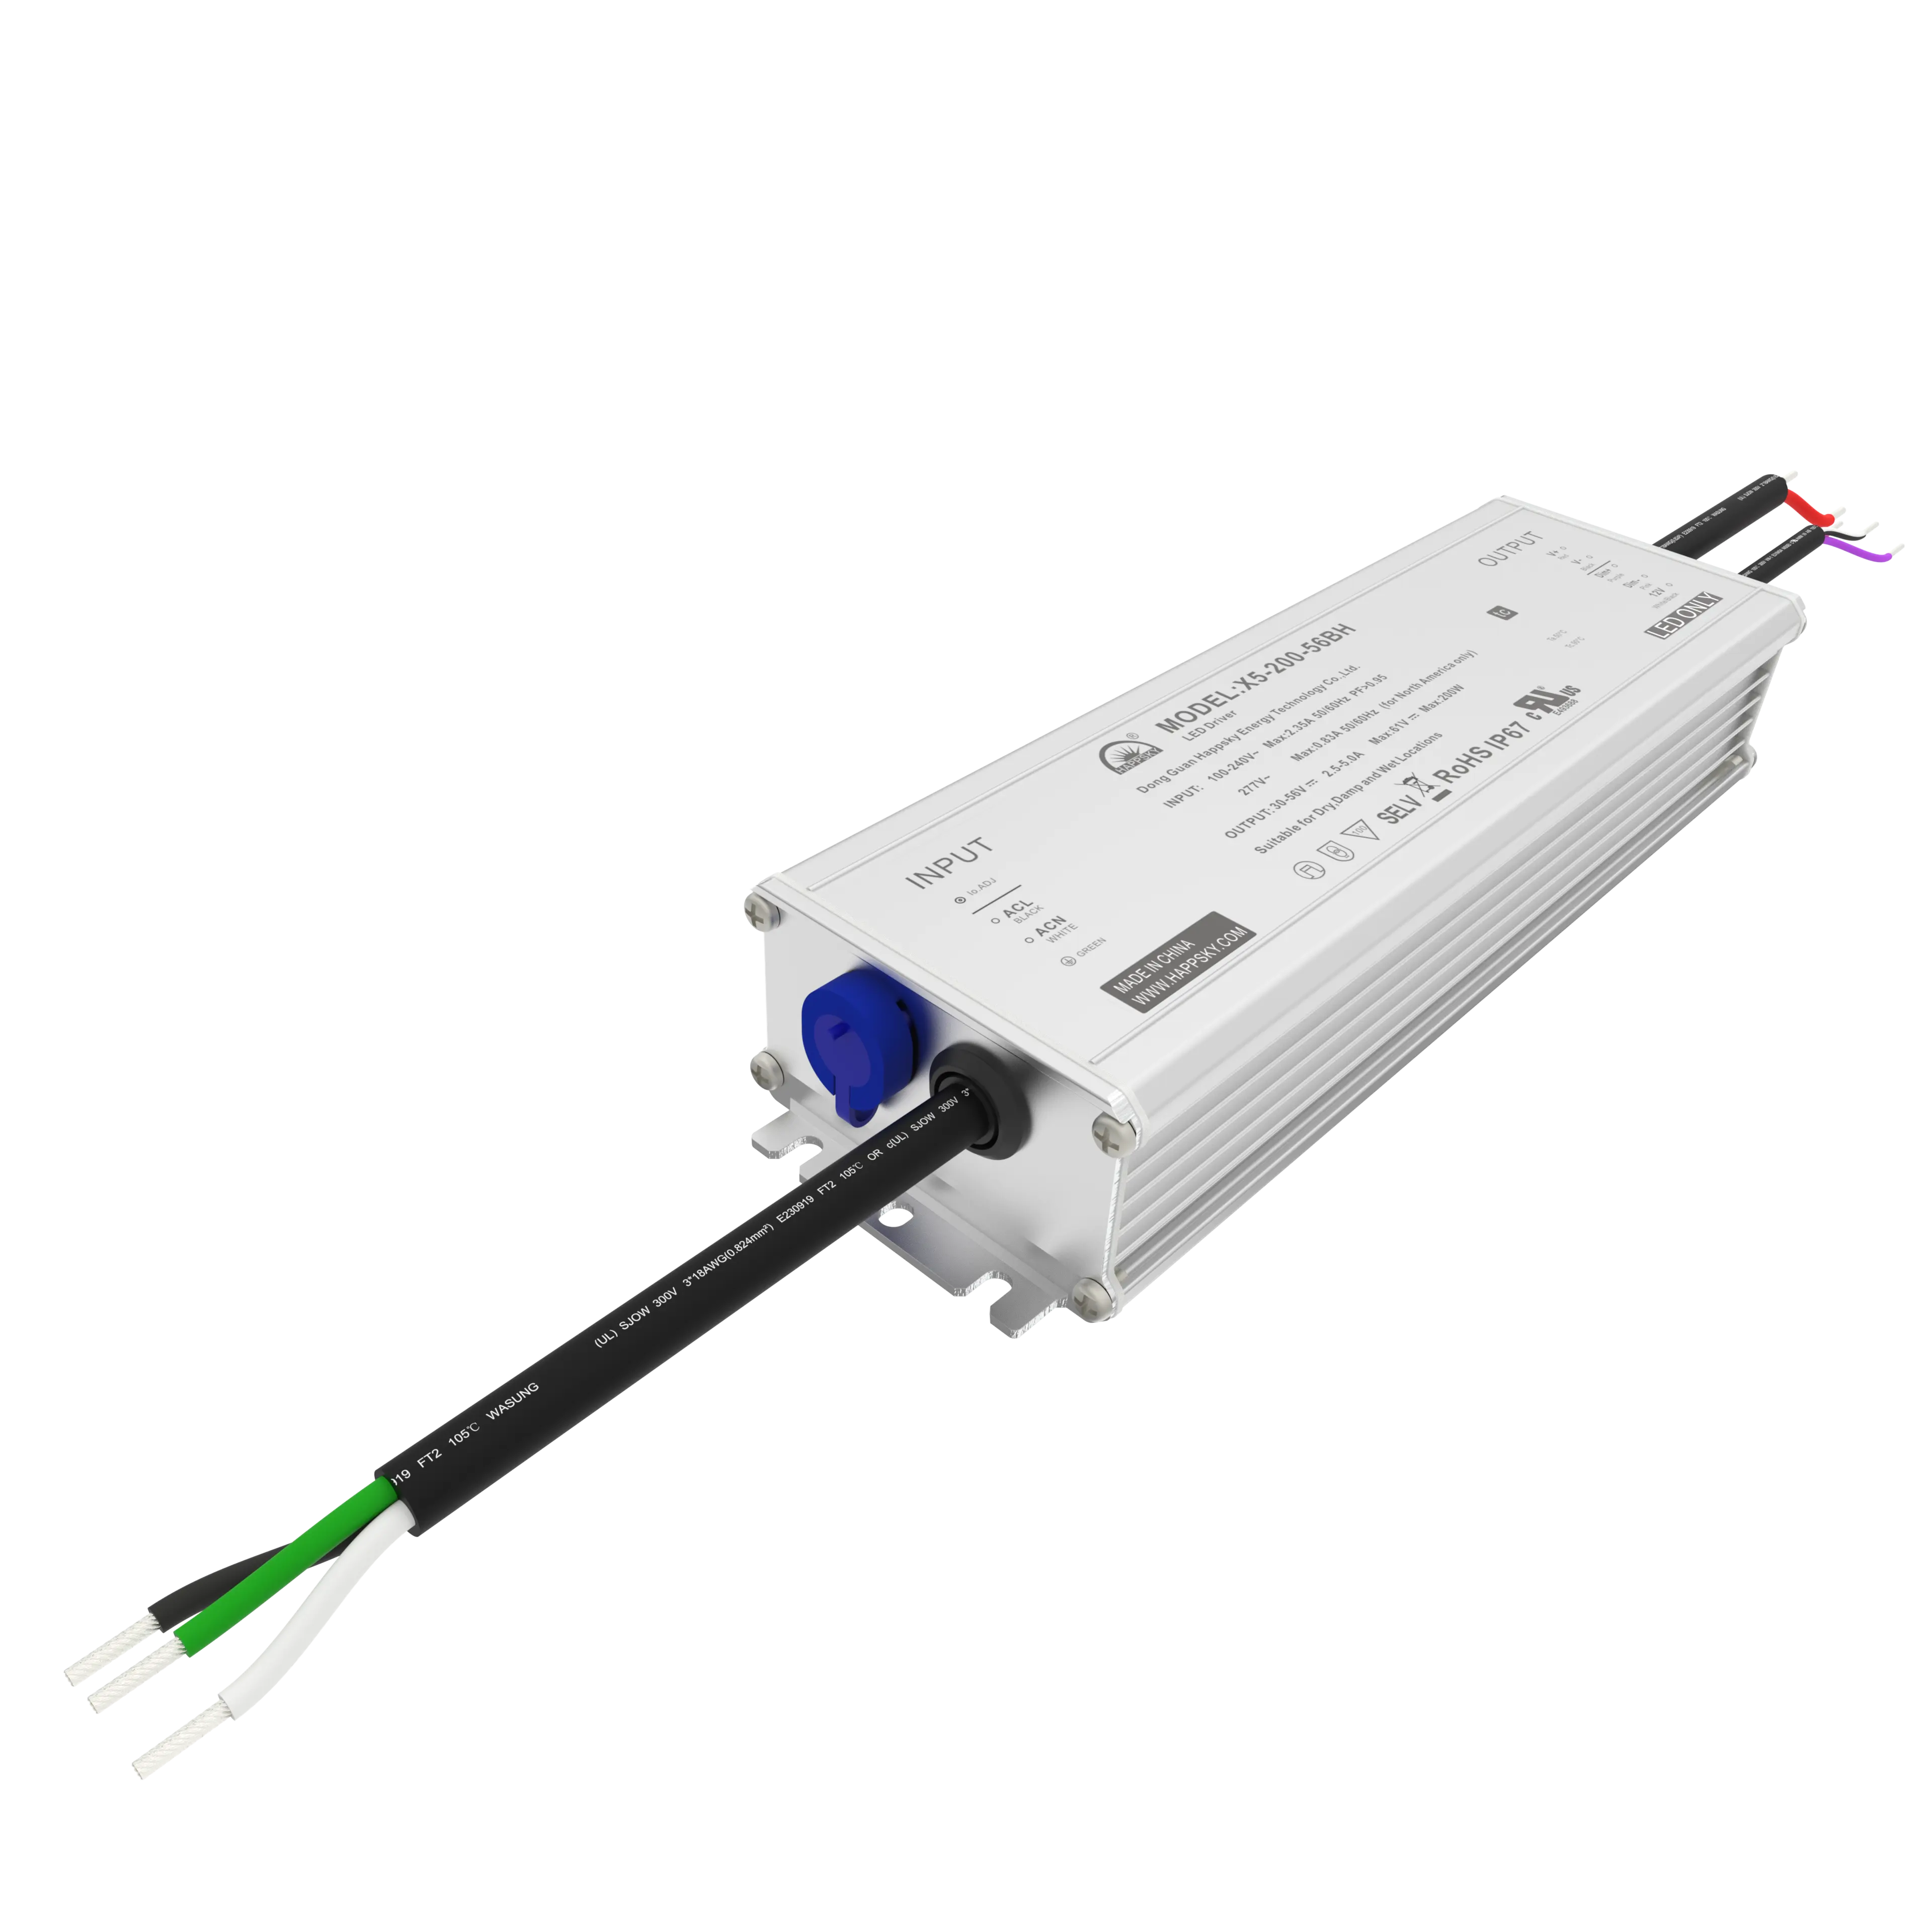 Konstantes Strom-LED-Laufwerfer 30 W 40 W 50 W 60 W 75 W 80 W 100 W 150 W 200 W wasserdicht IP67 Led-Laufwerfer Stromversorgung blinkfrei